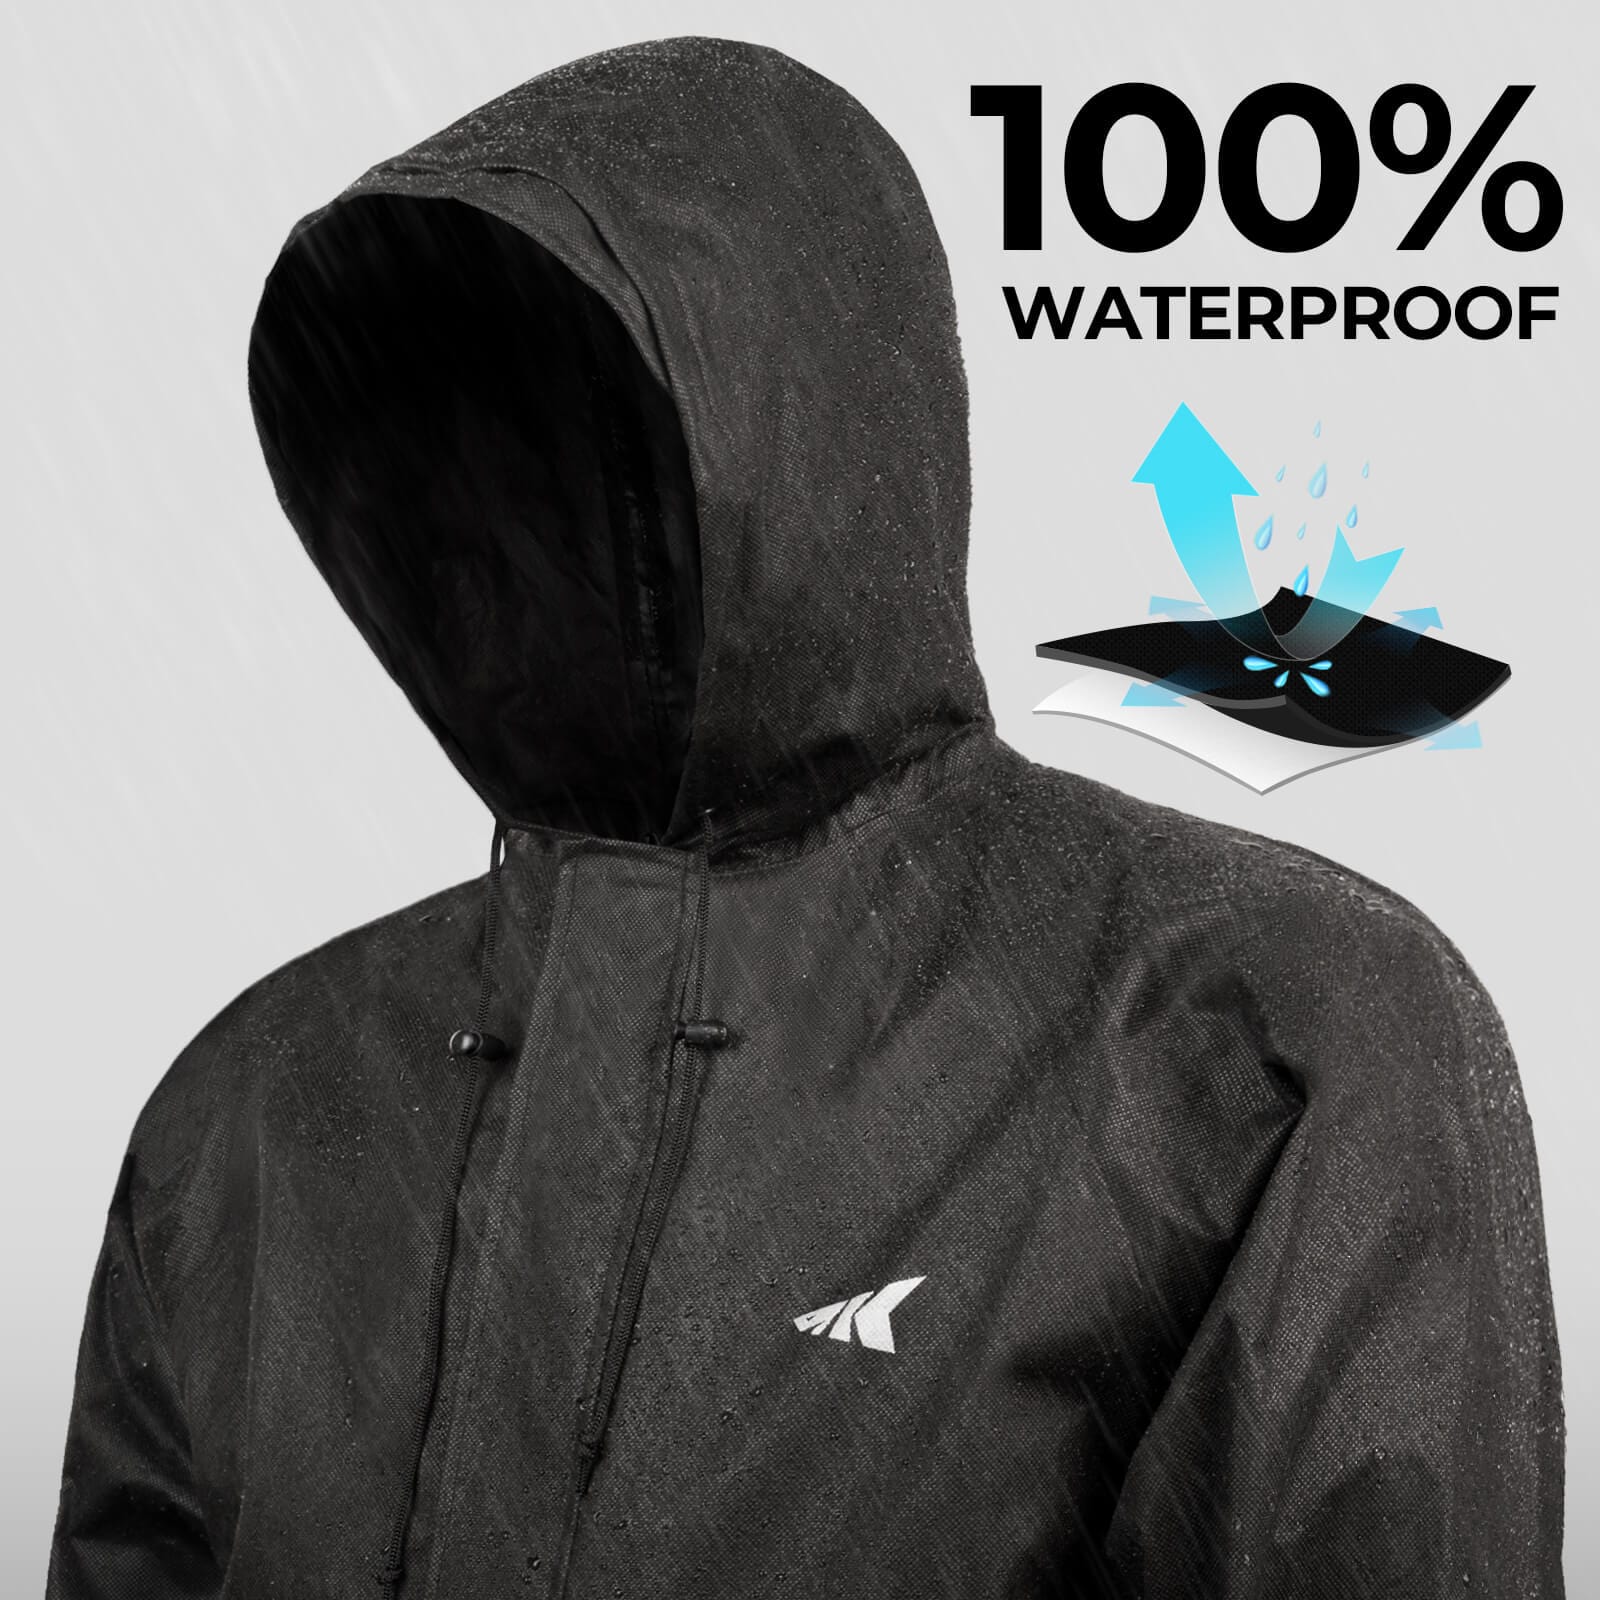 KastKing AquaLite Rain Suit, Waterproof Breathable Lightweight Rainwear